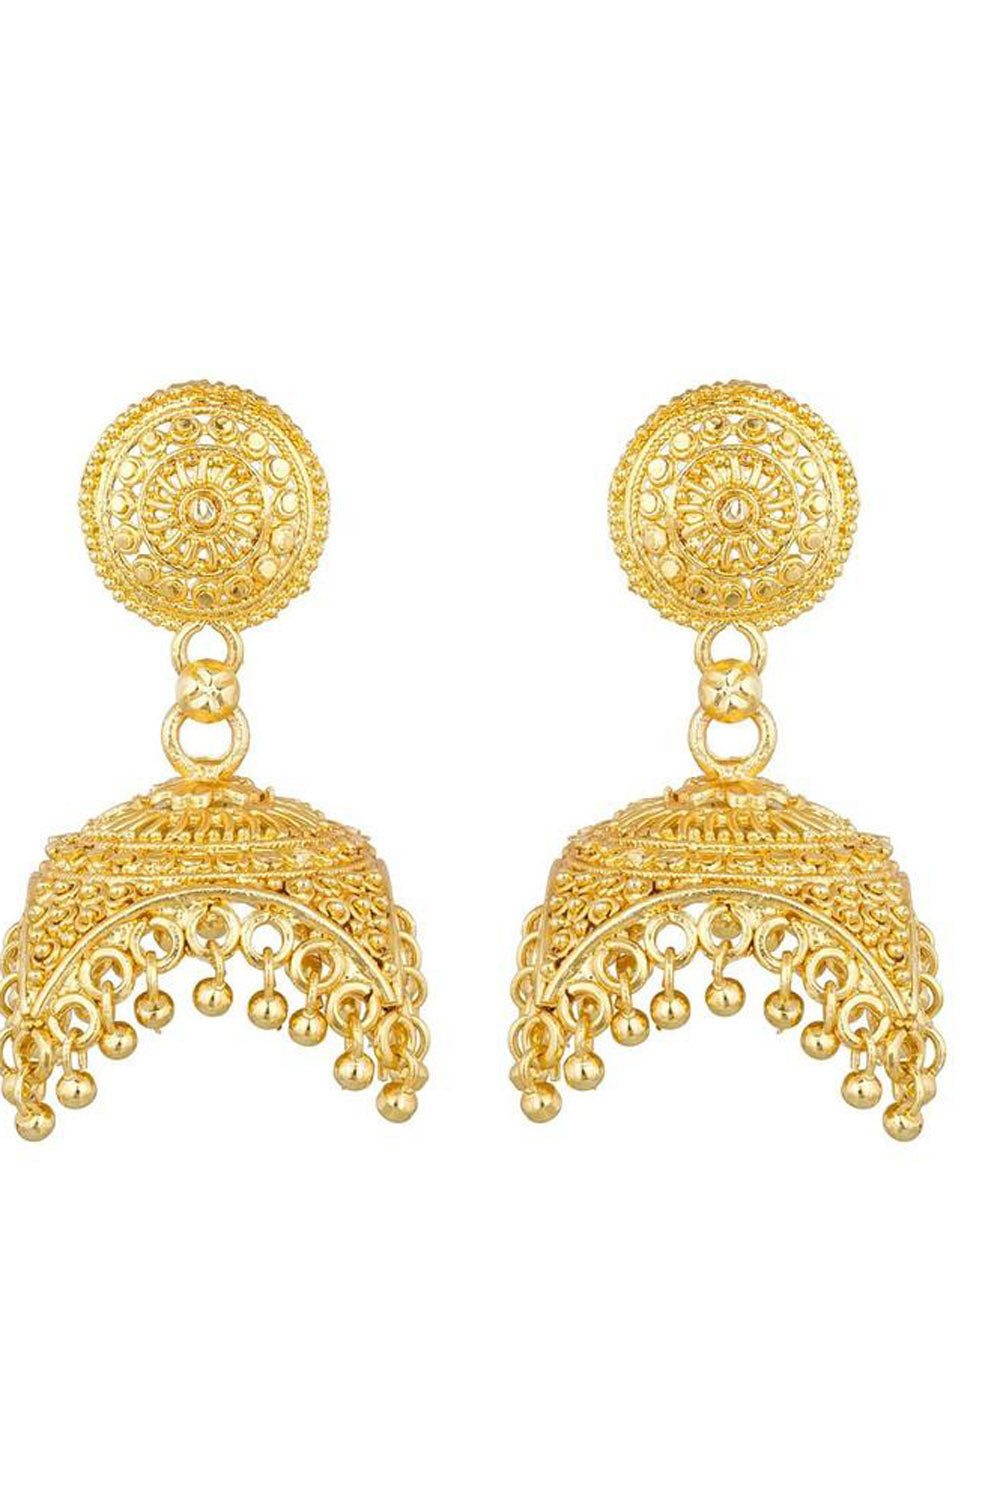 Buy Women's Alloys Earring in Gold Online